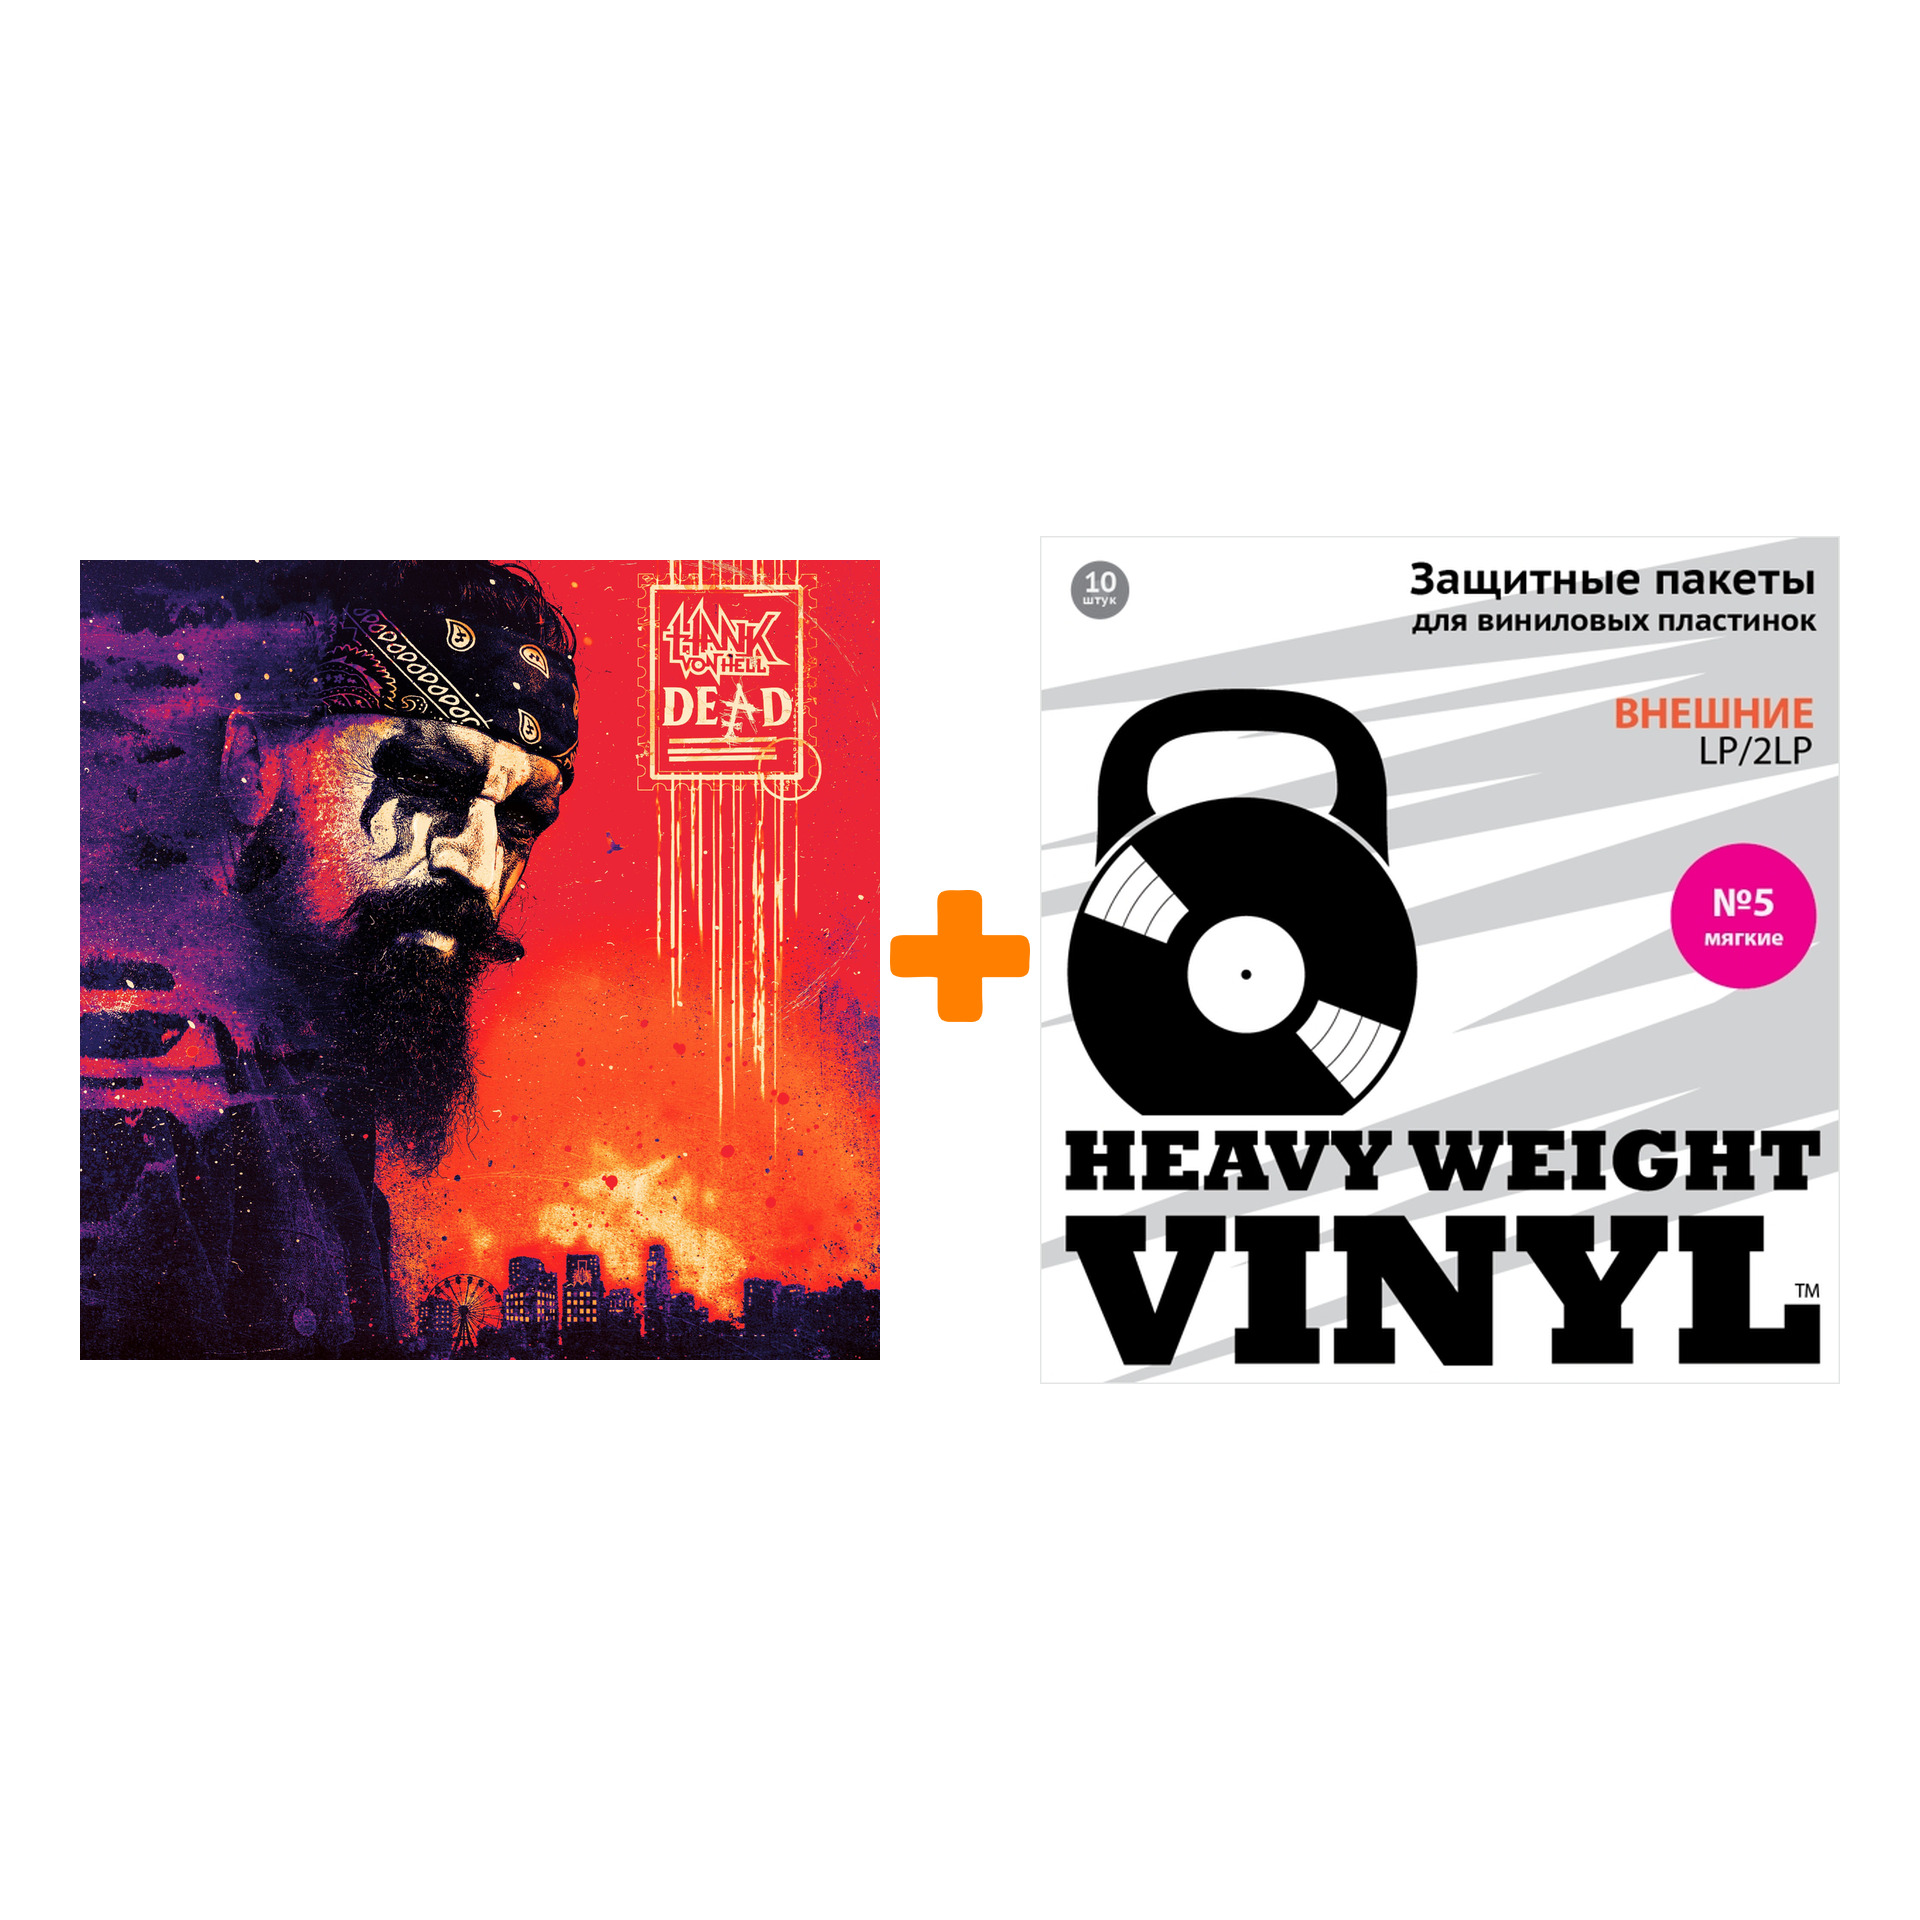 

HANK VON HELL Dead Coloured Vinyl LP + Пакеты внешние №5 мягкие 10 шт Набор